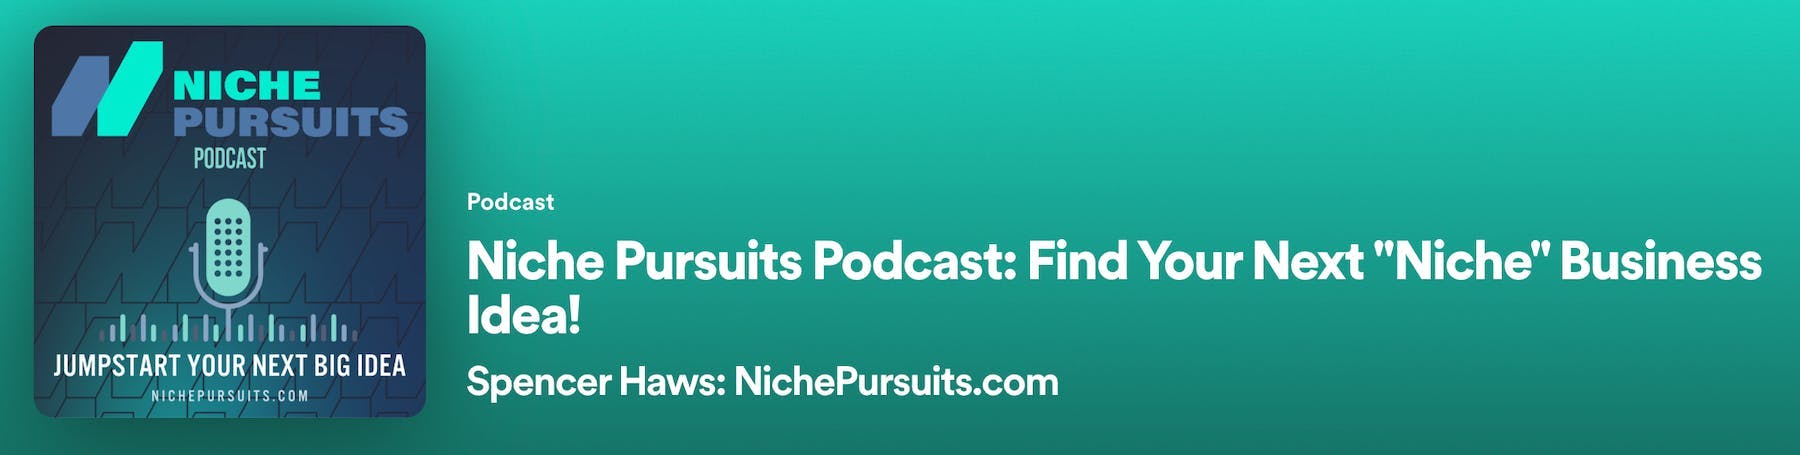 Podcast Niche pursuits